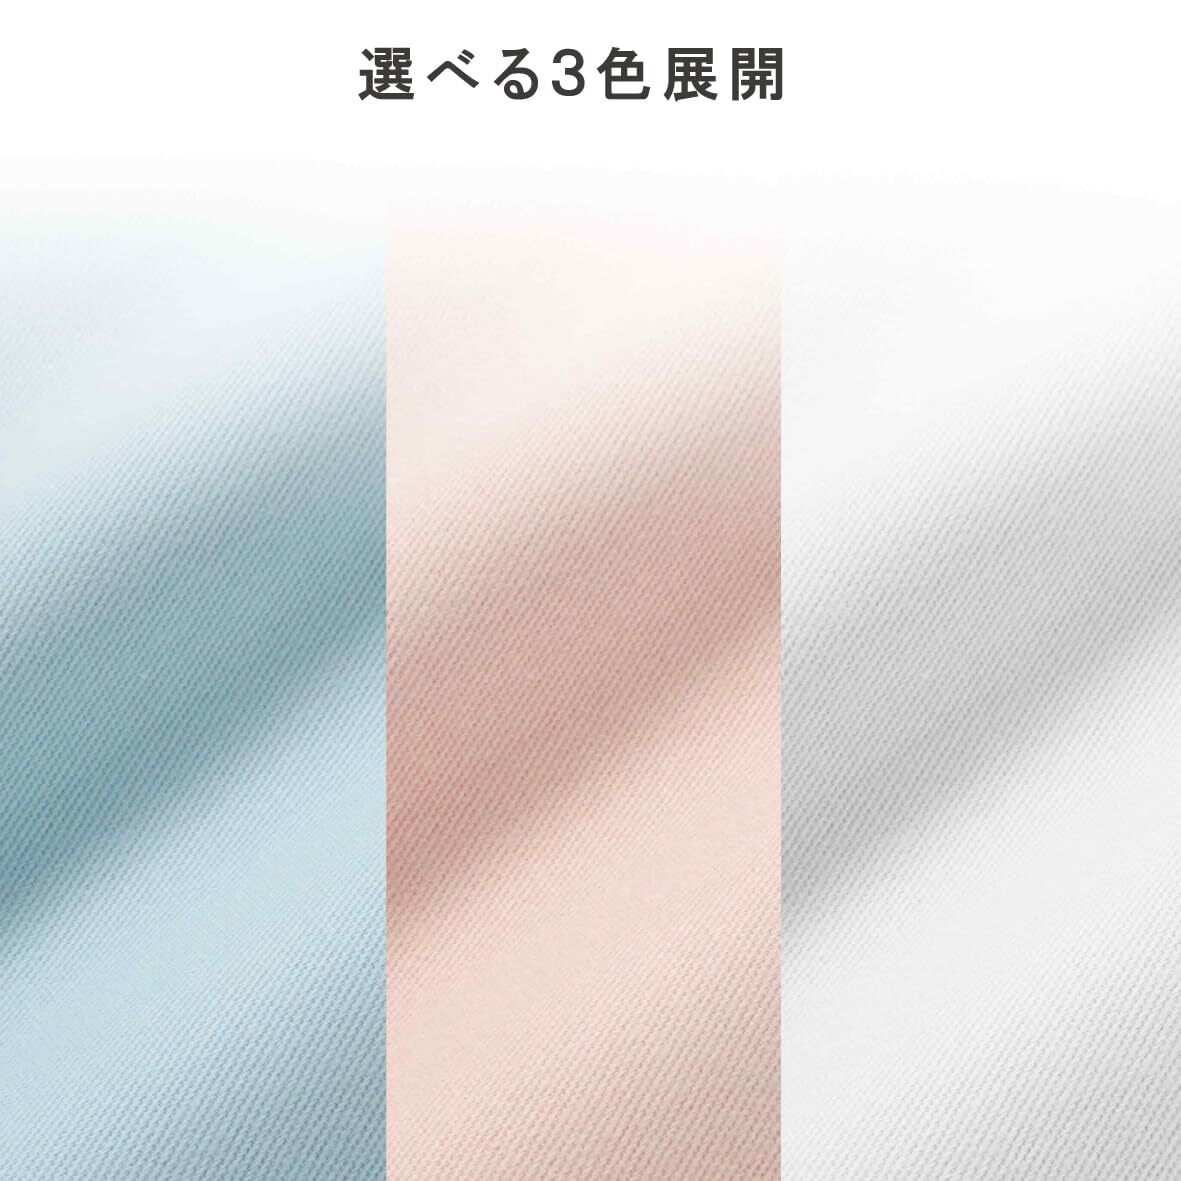 西川 (nishikawa) フリーセレクション 肌に優しいコットン100% フラットシーツ シングル 丈夫なツイル素材でパリッとした風合い ホ_画像7